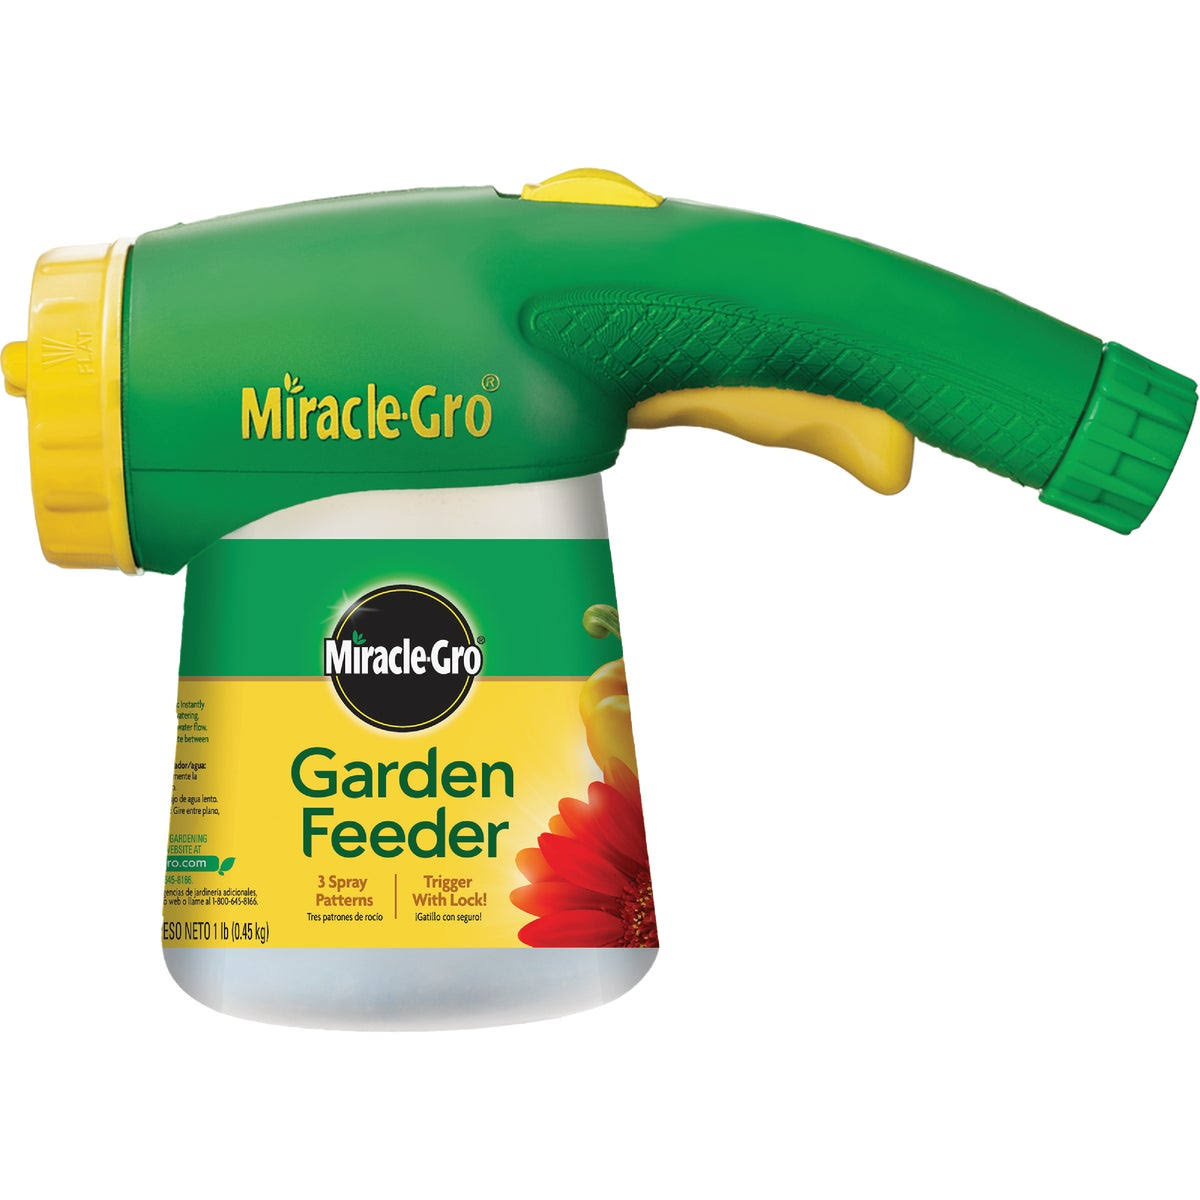 Miracle-Gro Next Generation Garden Feeder